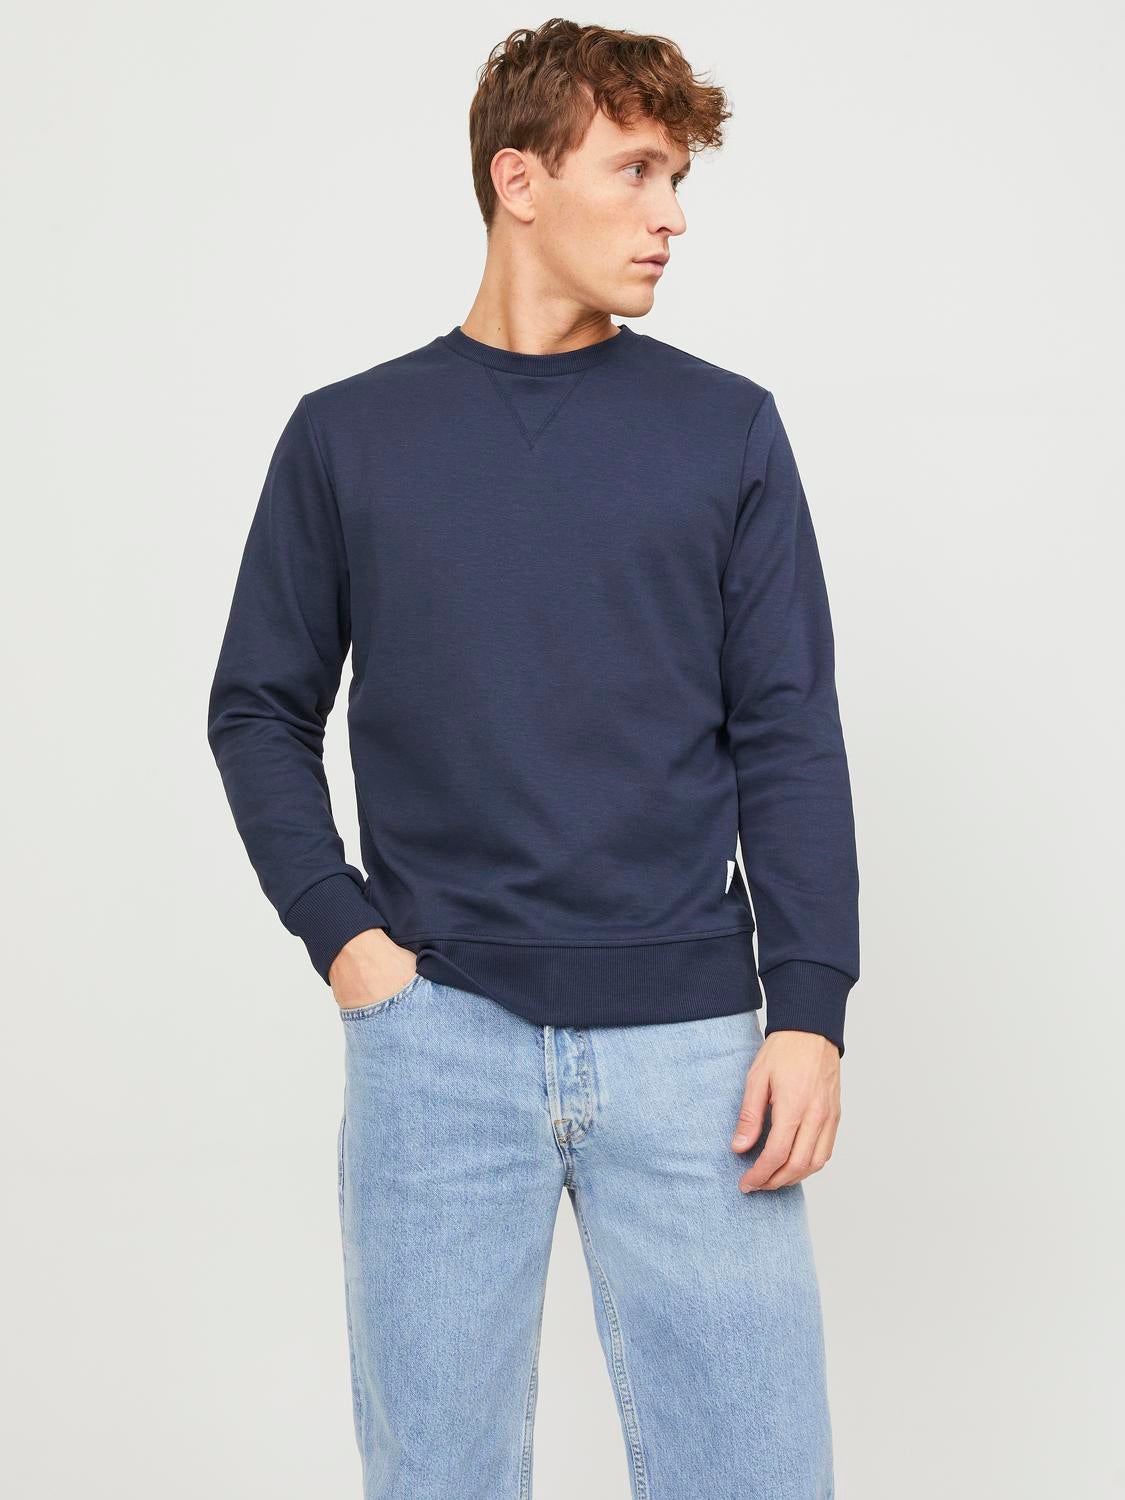 Jack & Jones sweatshirt HERREN Pullovers & Sweatshirts Hoodie Rabatt 57 % Blau XL 